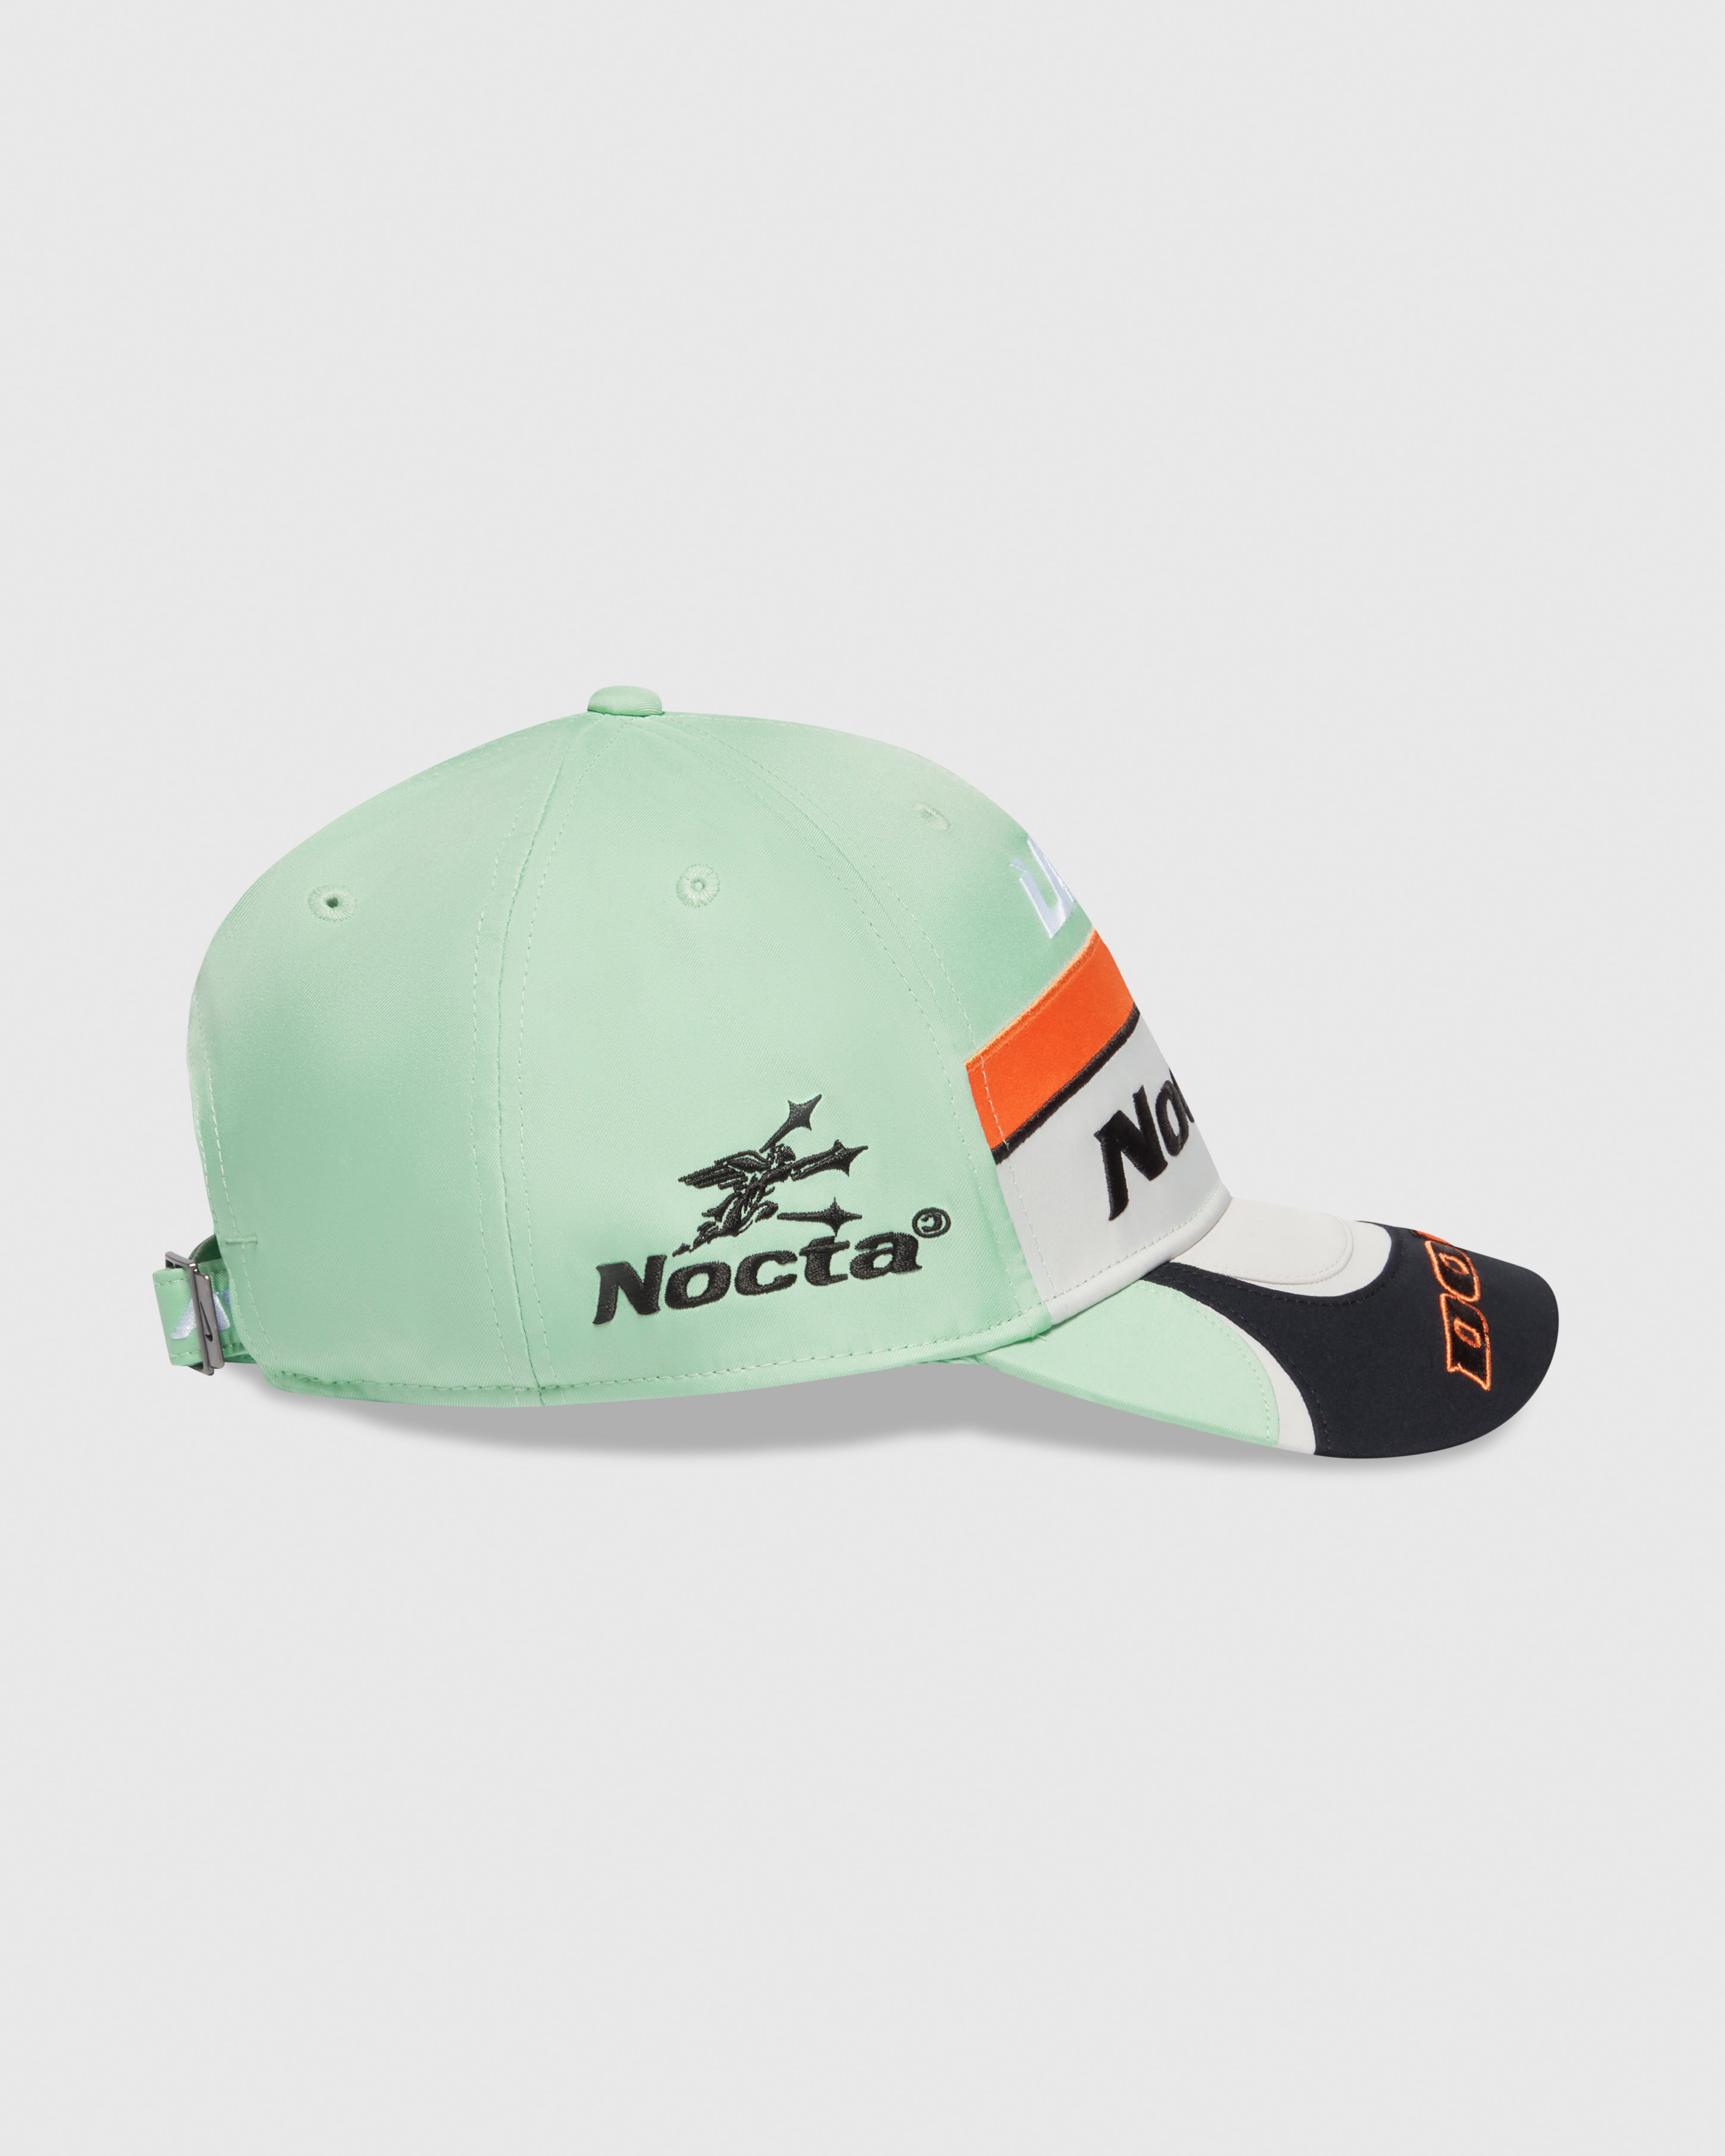 NOCTA x L'art DRX Hat - Enamel Green